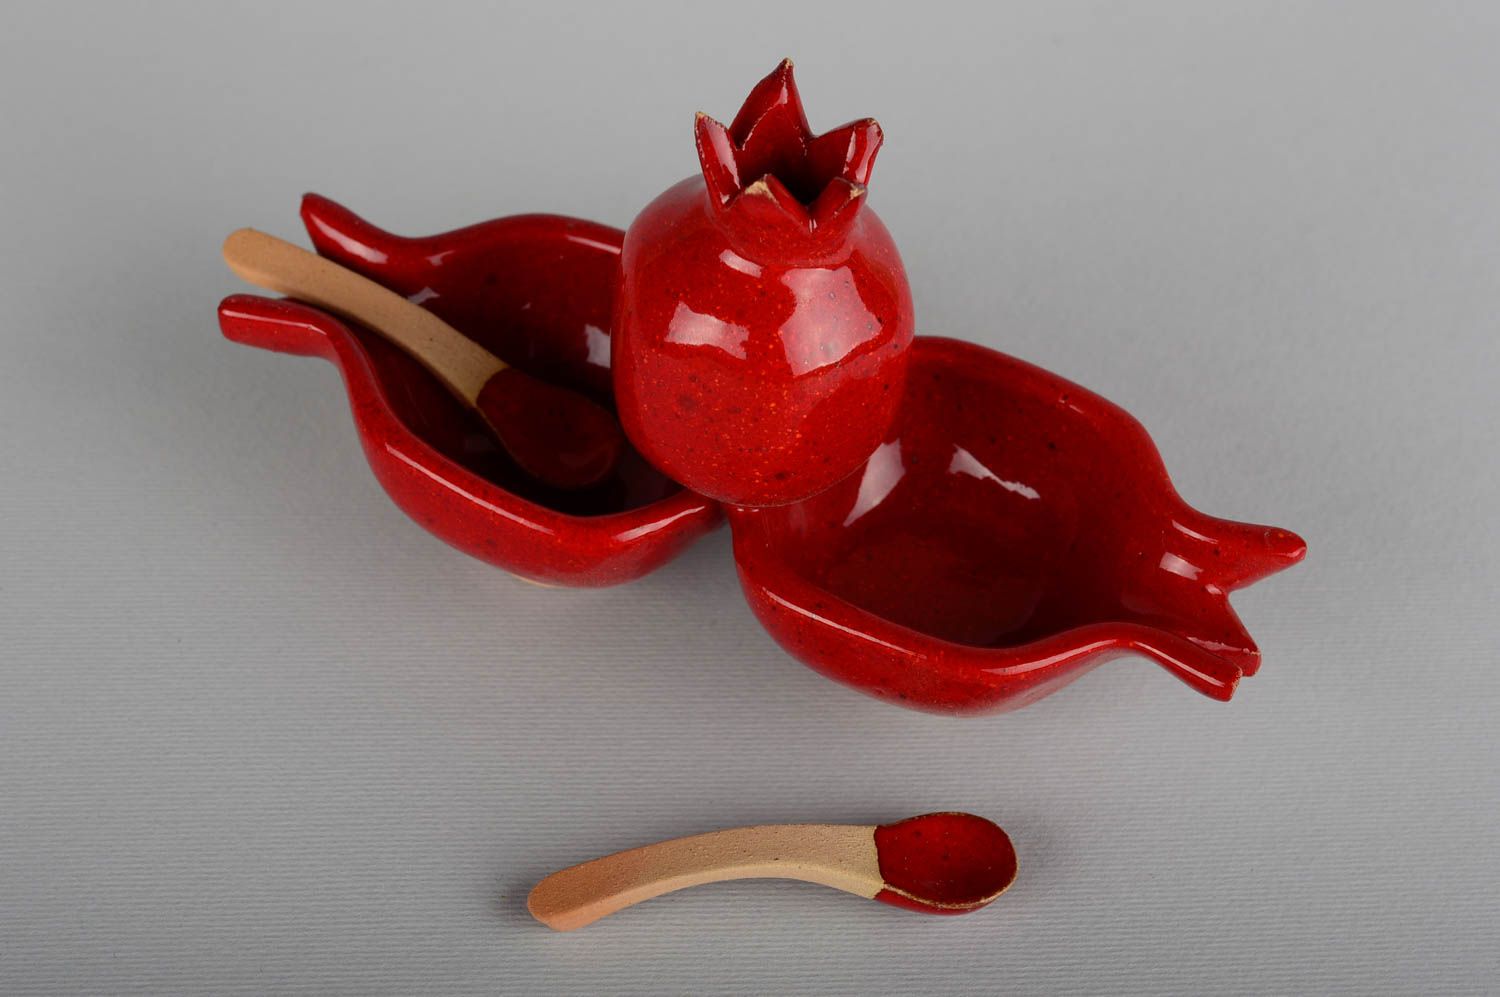 Saucière design fait main Vaisselle céramique Accessoire cuisine rouge grenades photo 3